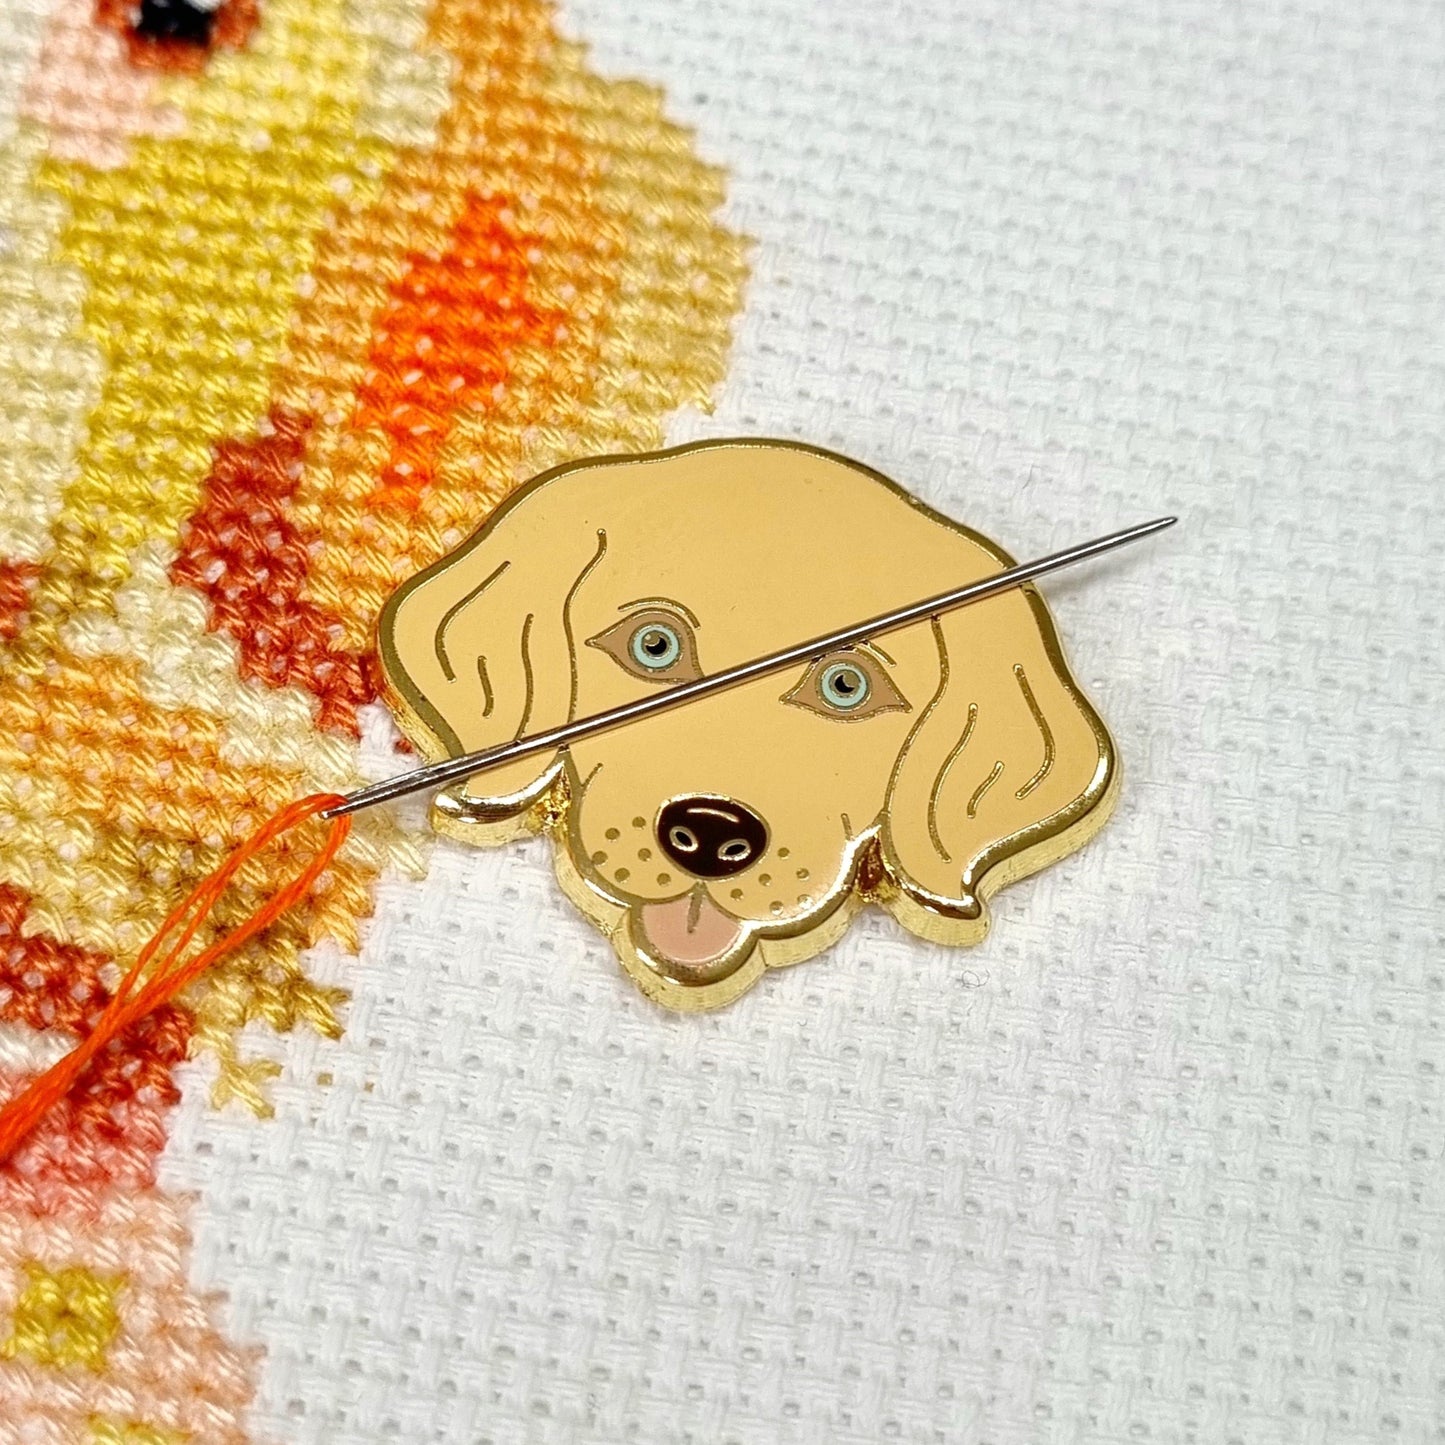 Mandala Dog Cross Stitch Kit